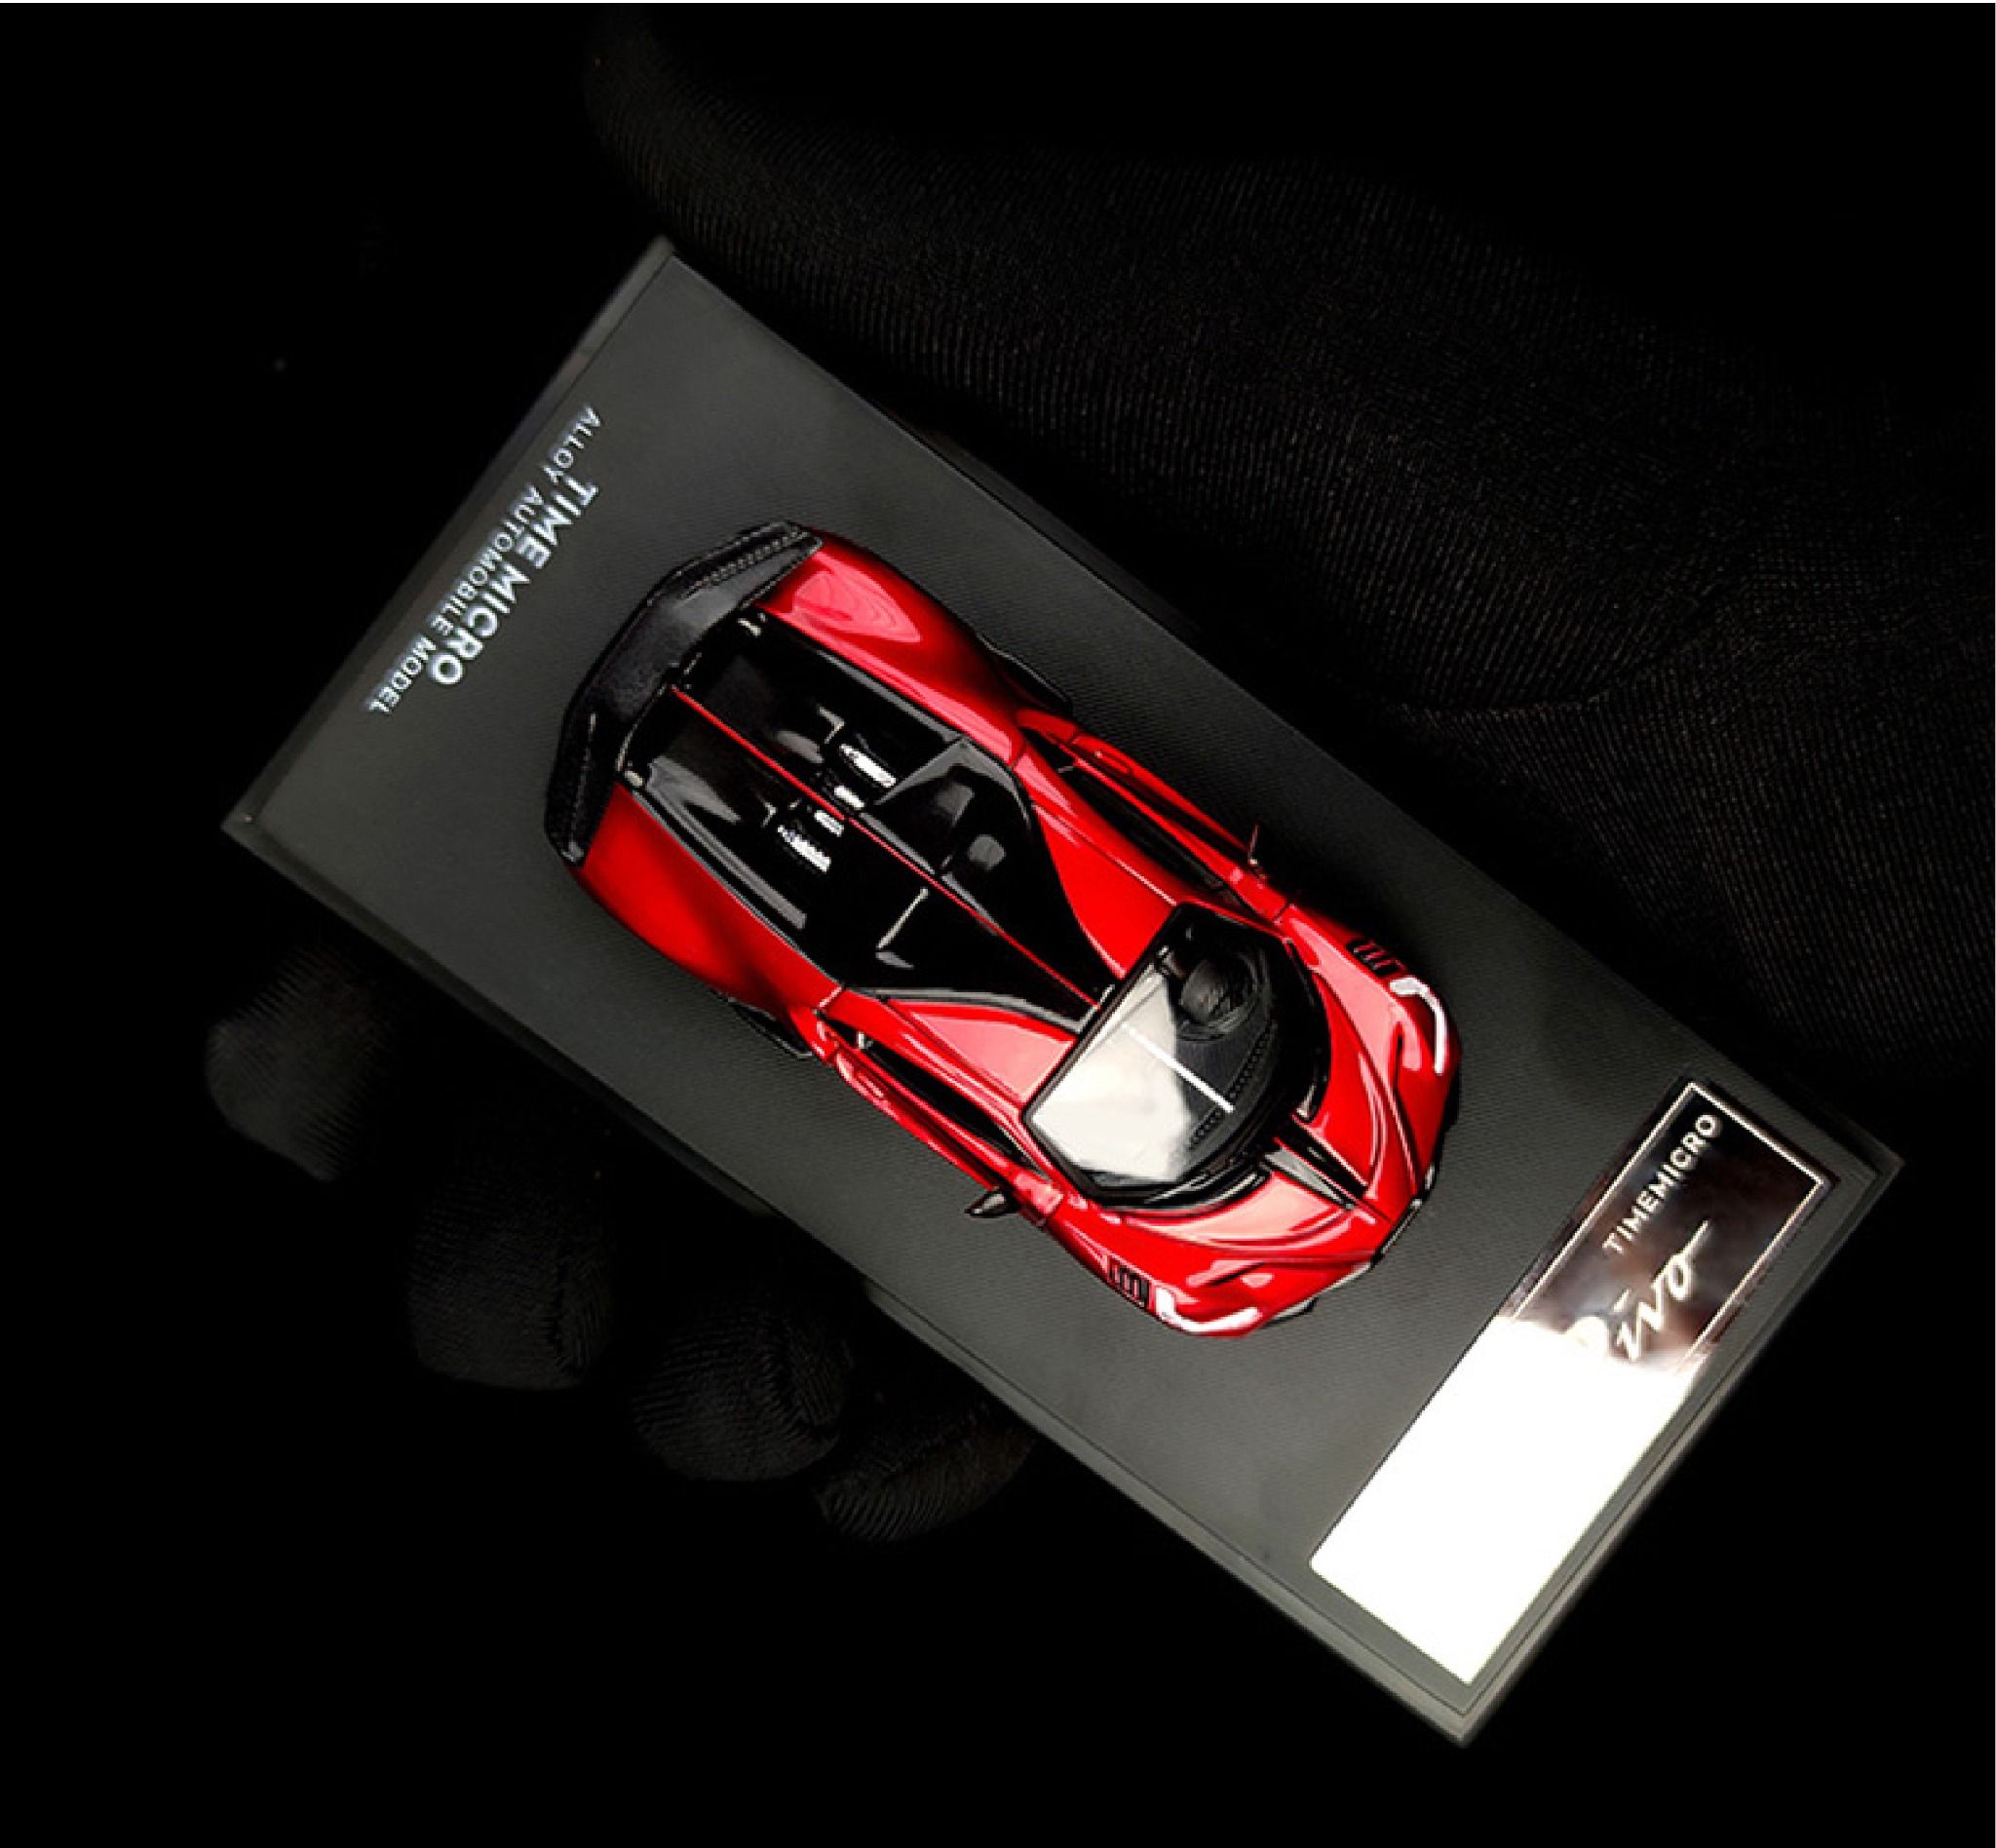  Mô hình xe Bugatti Divo Red Bburago x Time micro tỉ lệ 1:64 18-59159 